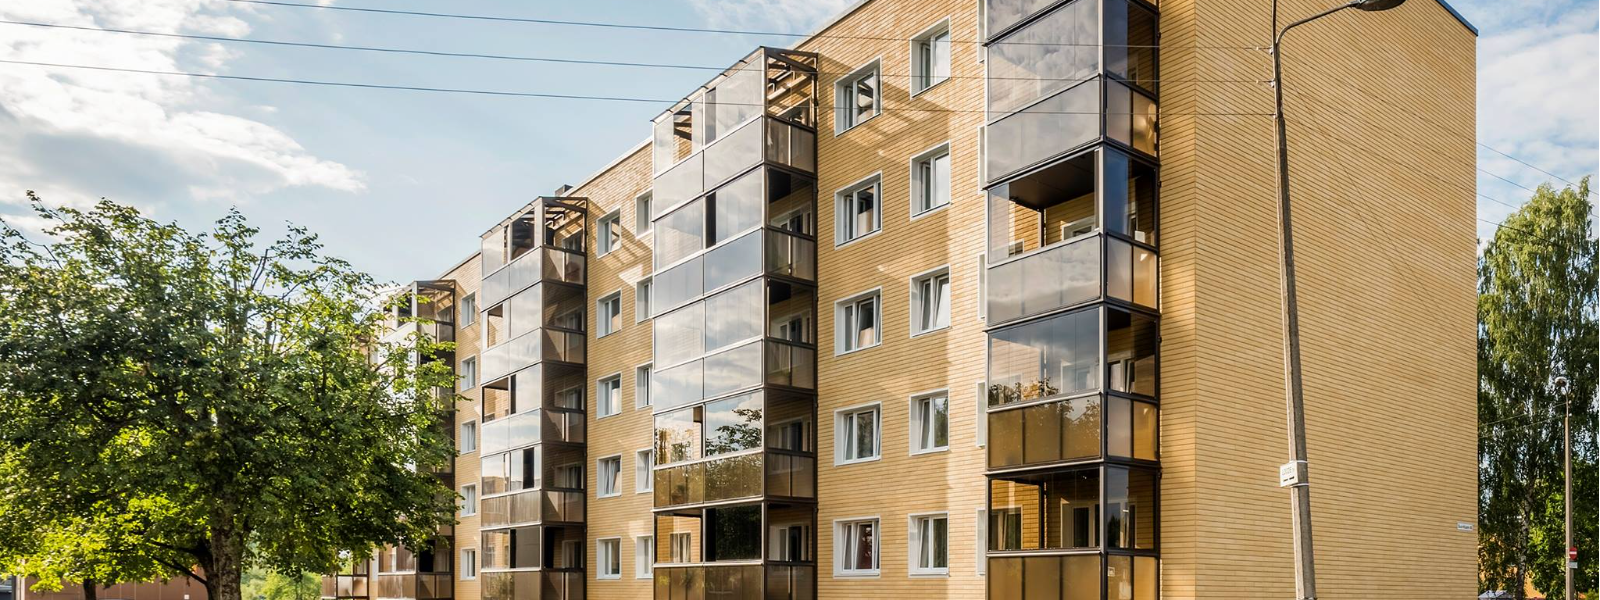 BALTI VARA EHITUS OÜ - Oleme Eesti juhtiv korterelamute tervikliku rekonstrueerimise ettevõte, kes loob kestvaid lahendu...